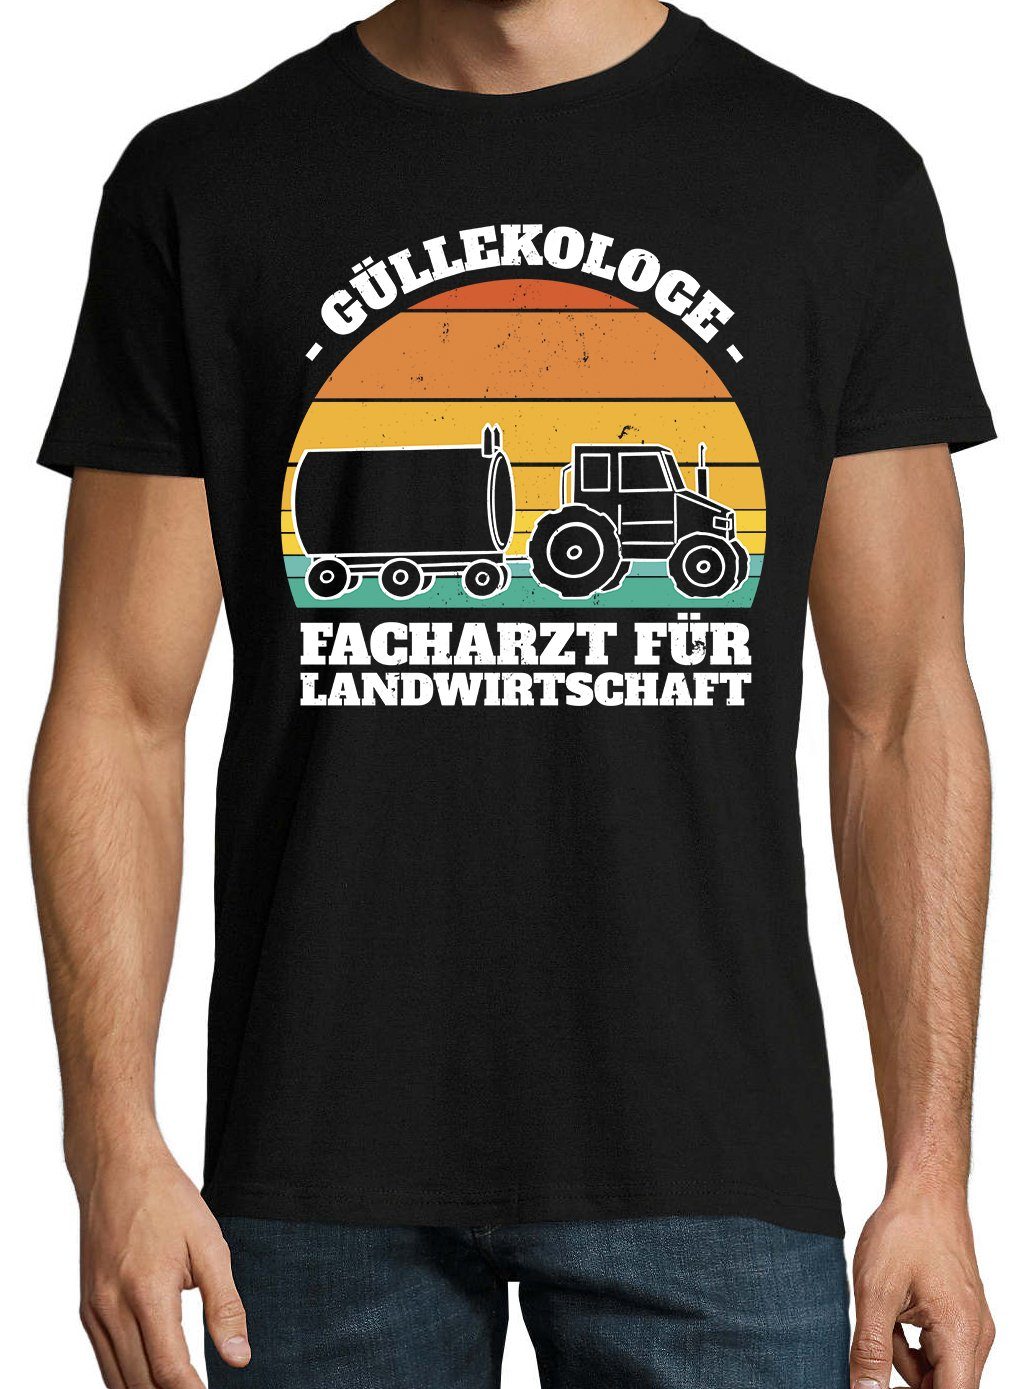 Güllekologe Frontprint Shirt Farmer mit T-Shirt Youth Herren Designz Schwarz lustigem